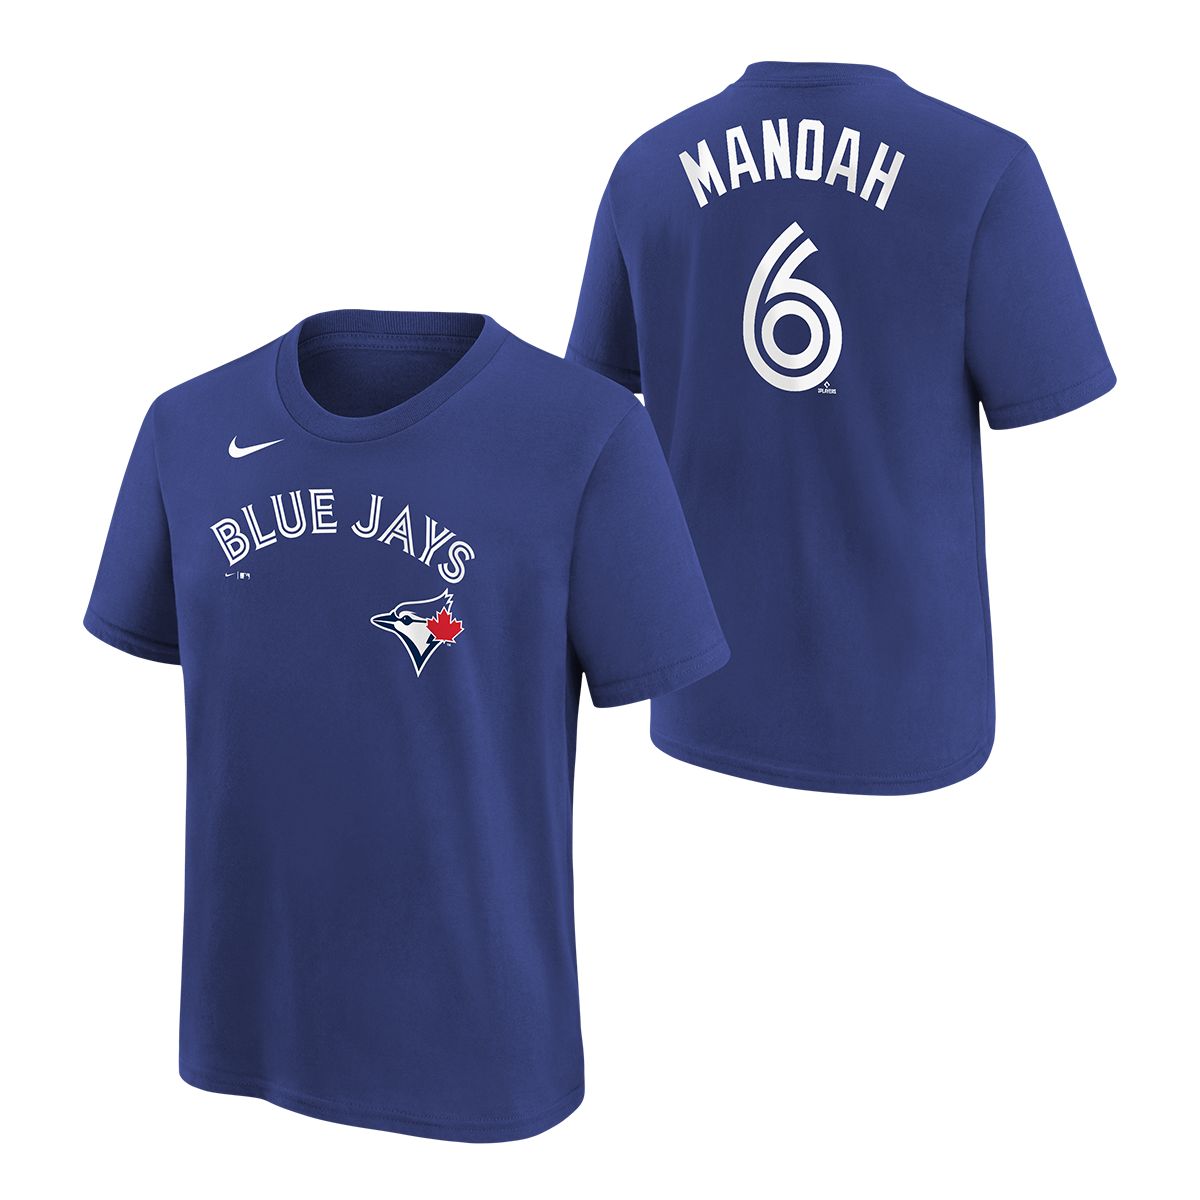 NIKE Youth Toronto Blue Jays Nike Alek Manoah Player T Shirt